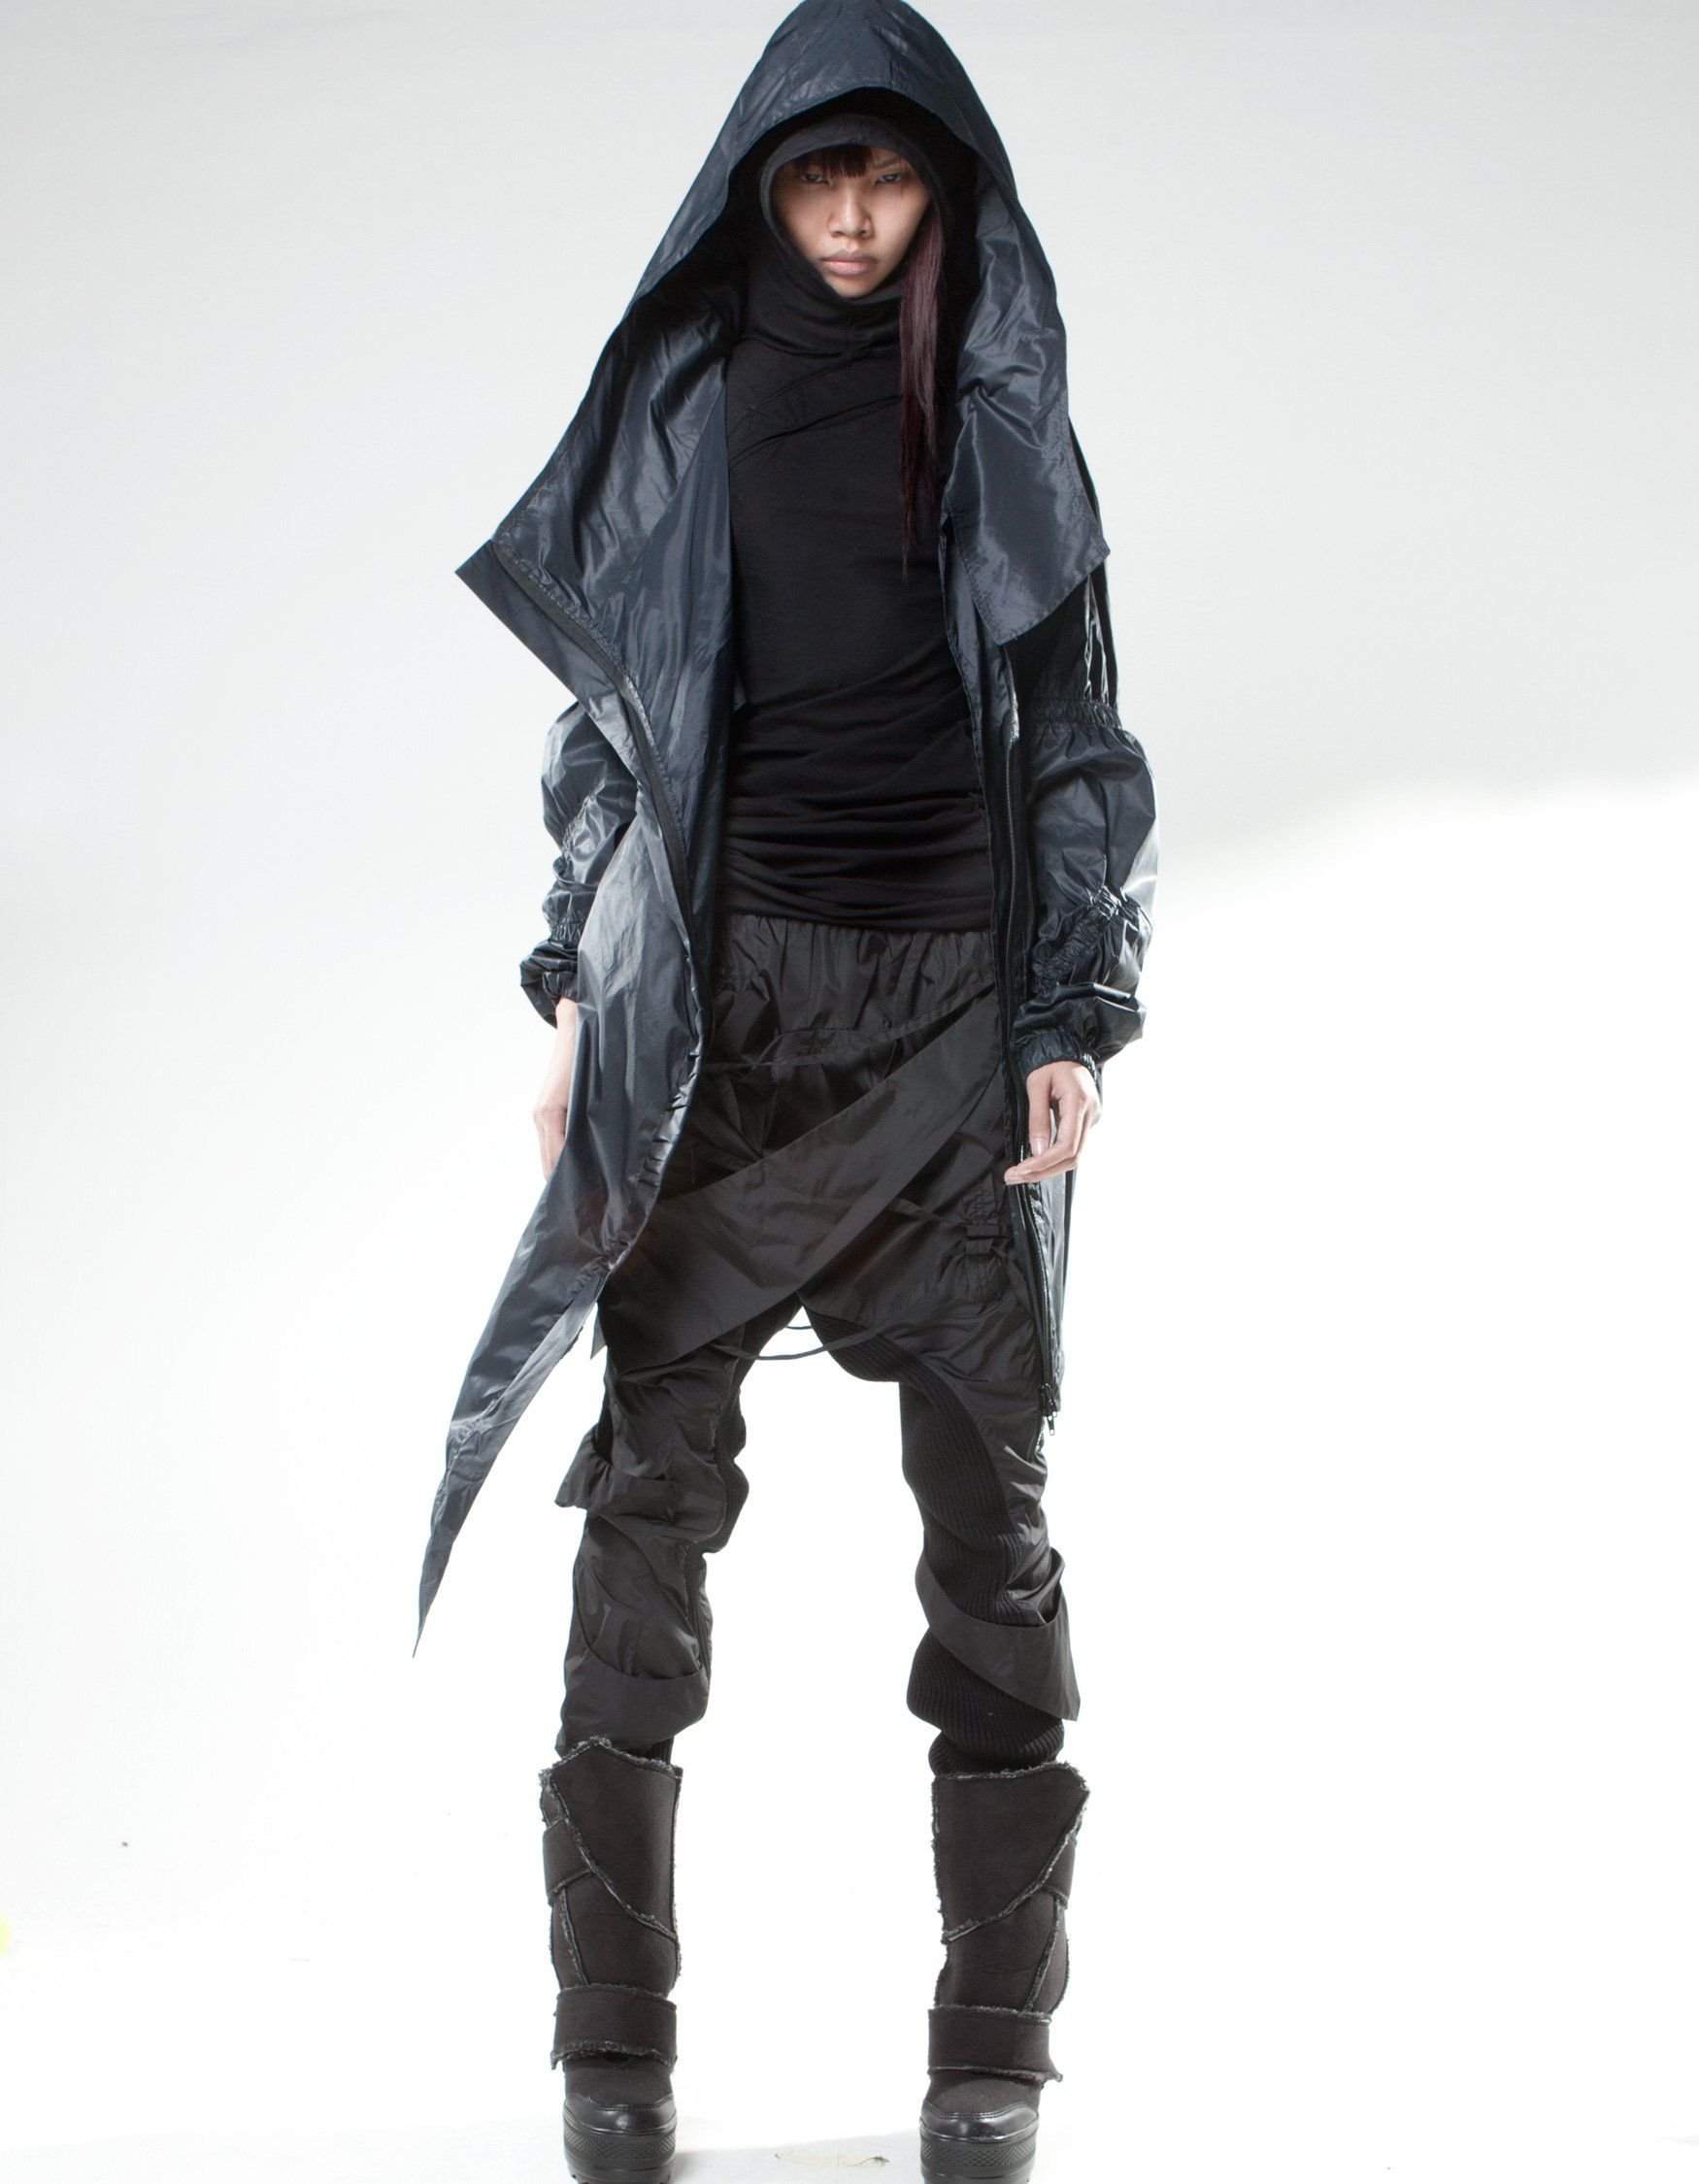 Cyberpunk стиль одежды мужской фото 84